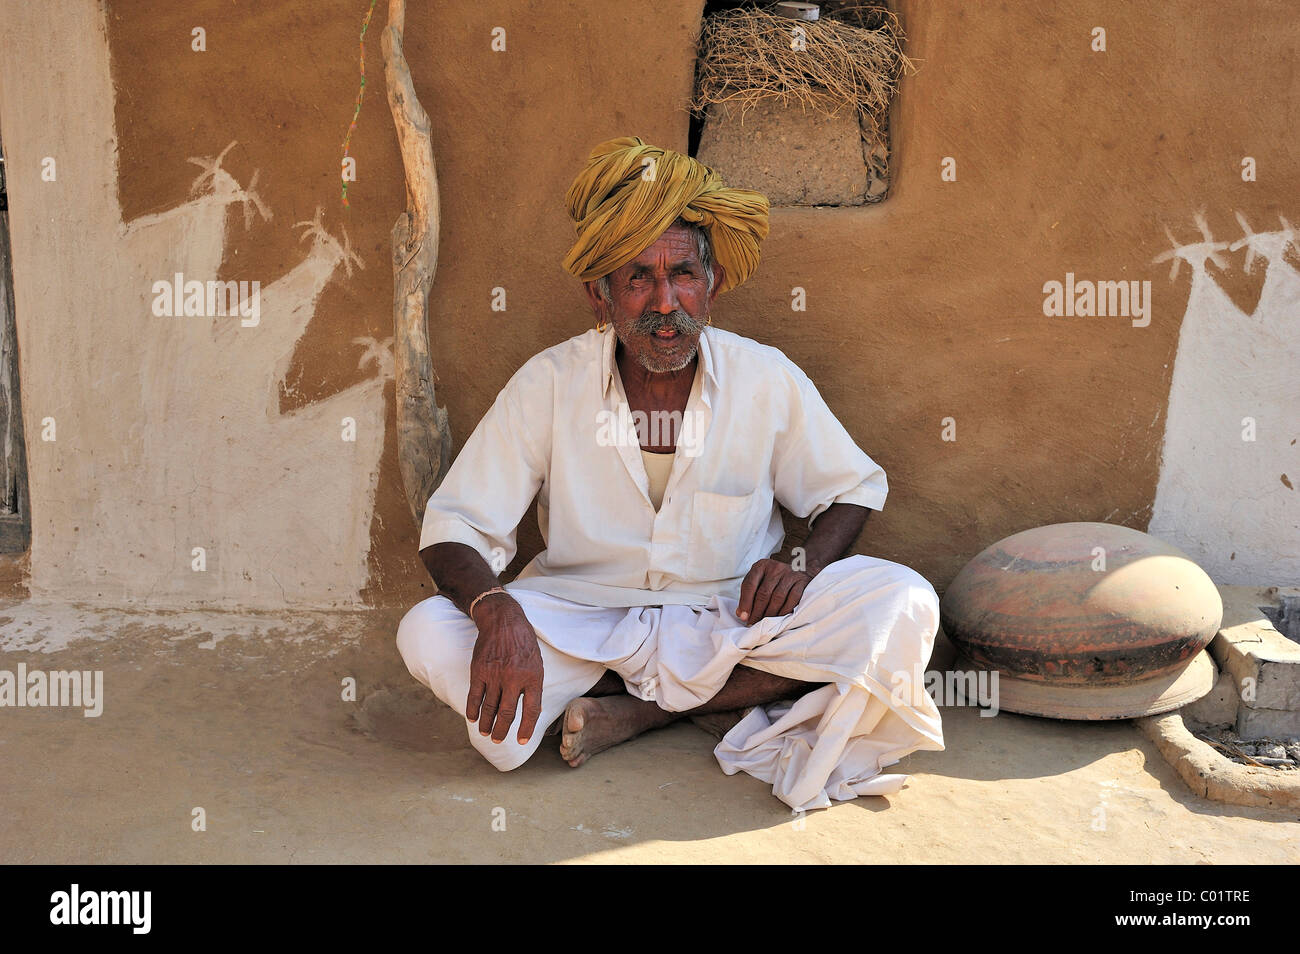 Un homme âgé portant un turban assis en face du mur peint de sa maison, désert de Thar, Rajasthan, Inde, Asie Banque D'Images